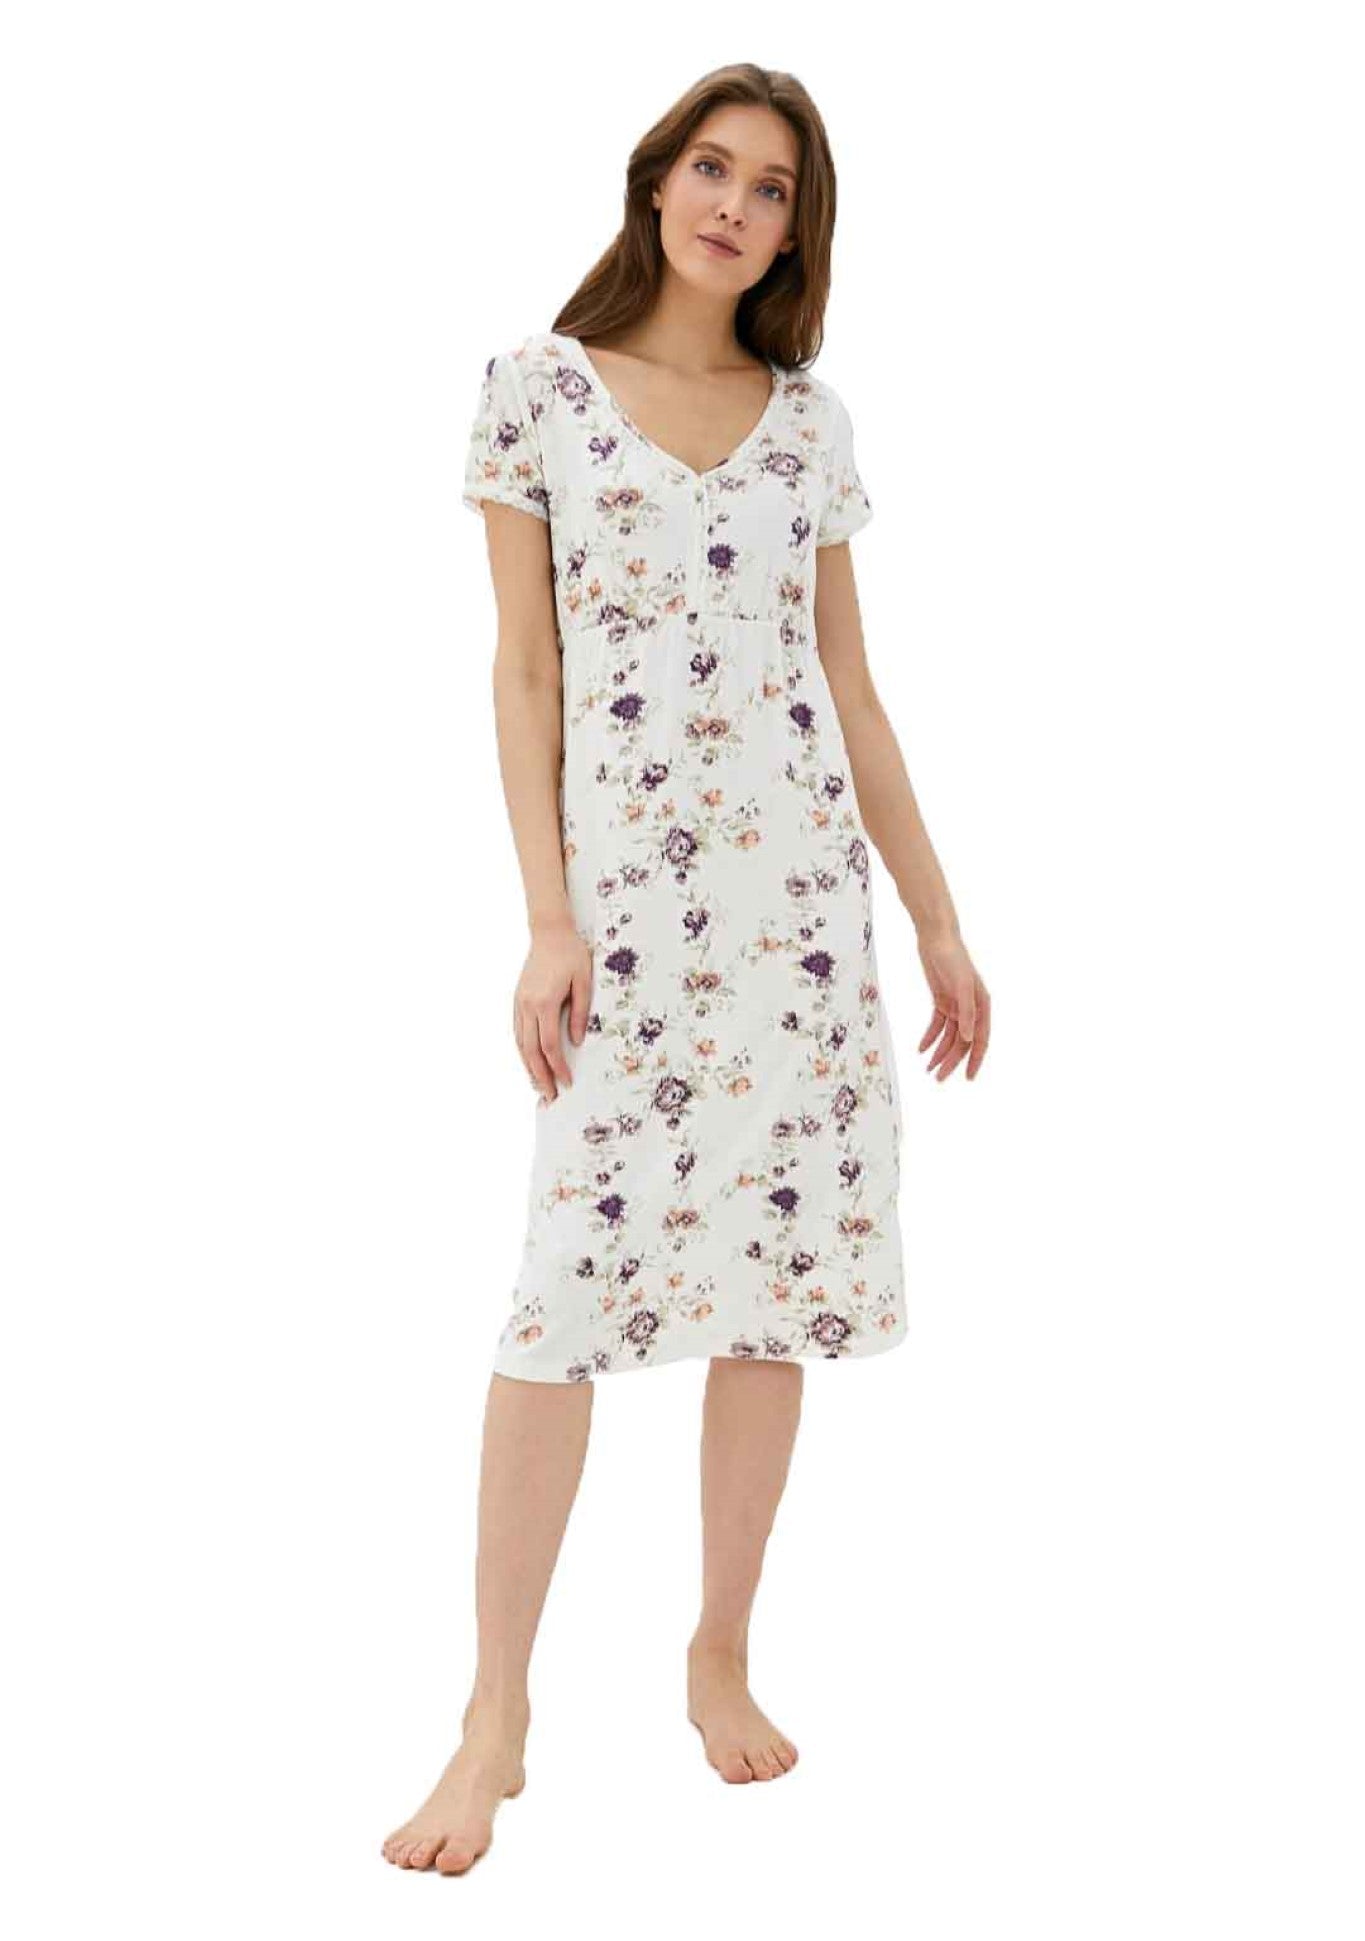 Exklusives Nachtkleid Damen Nachthemd mit floralem Design - V-Ausschnitt LMS-6039